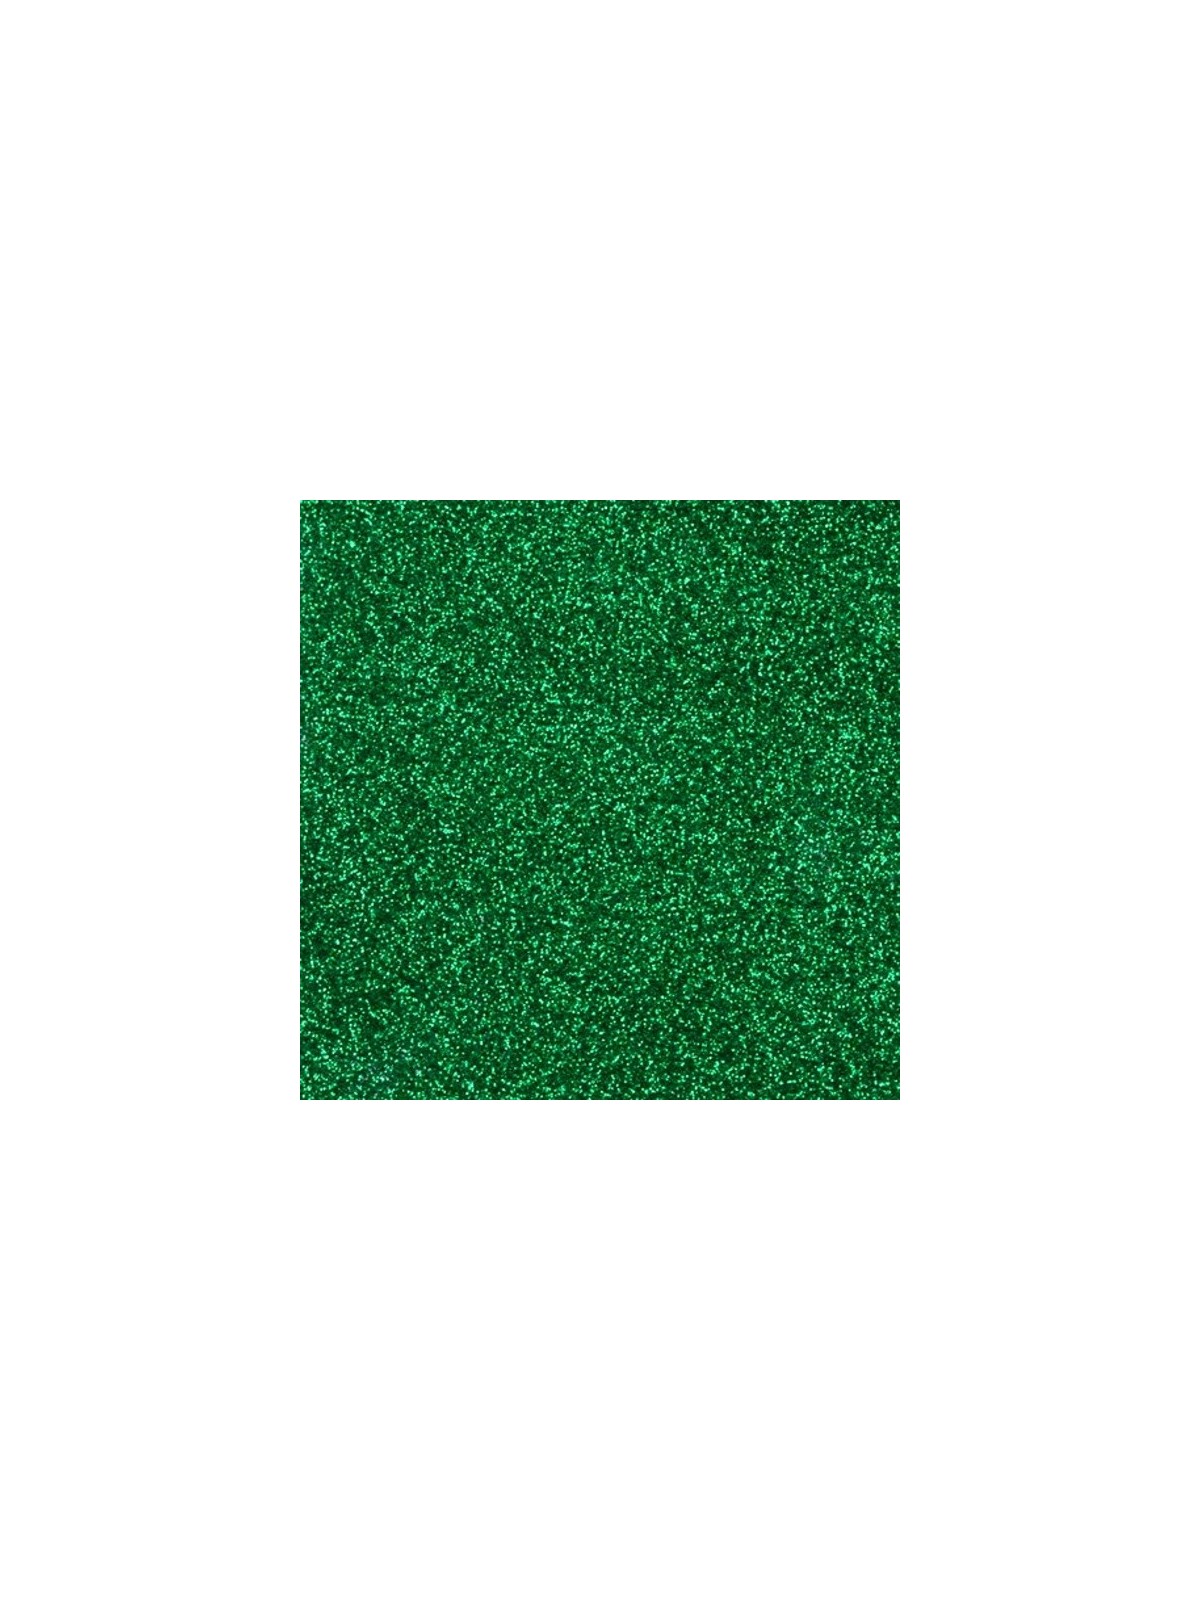 Sugarcity Brokat do dekoracji Emerald Glitter - Szmaragdowy - 10ml